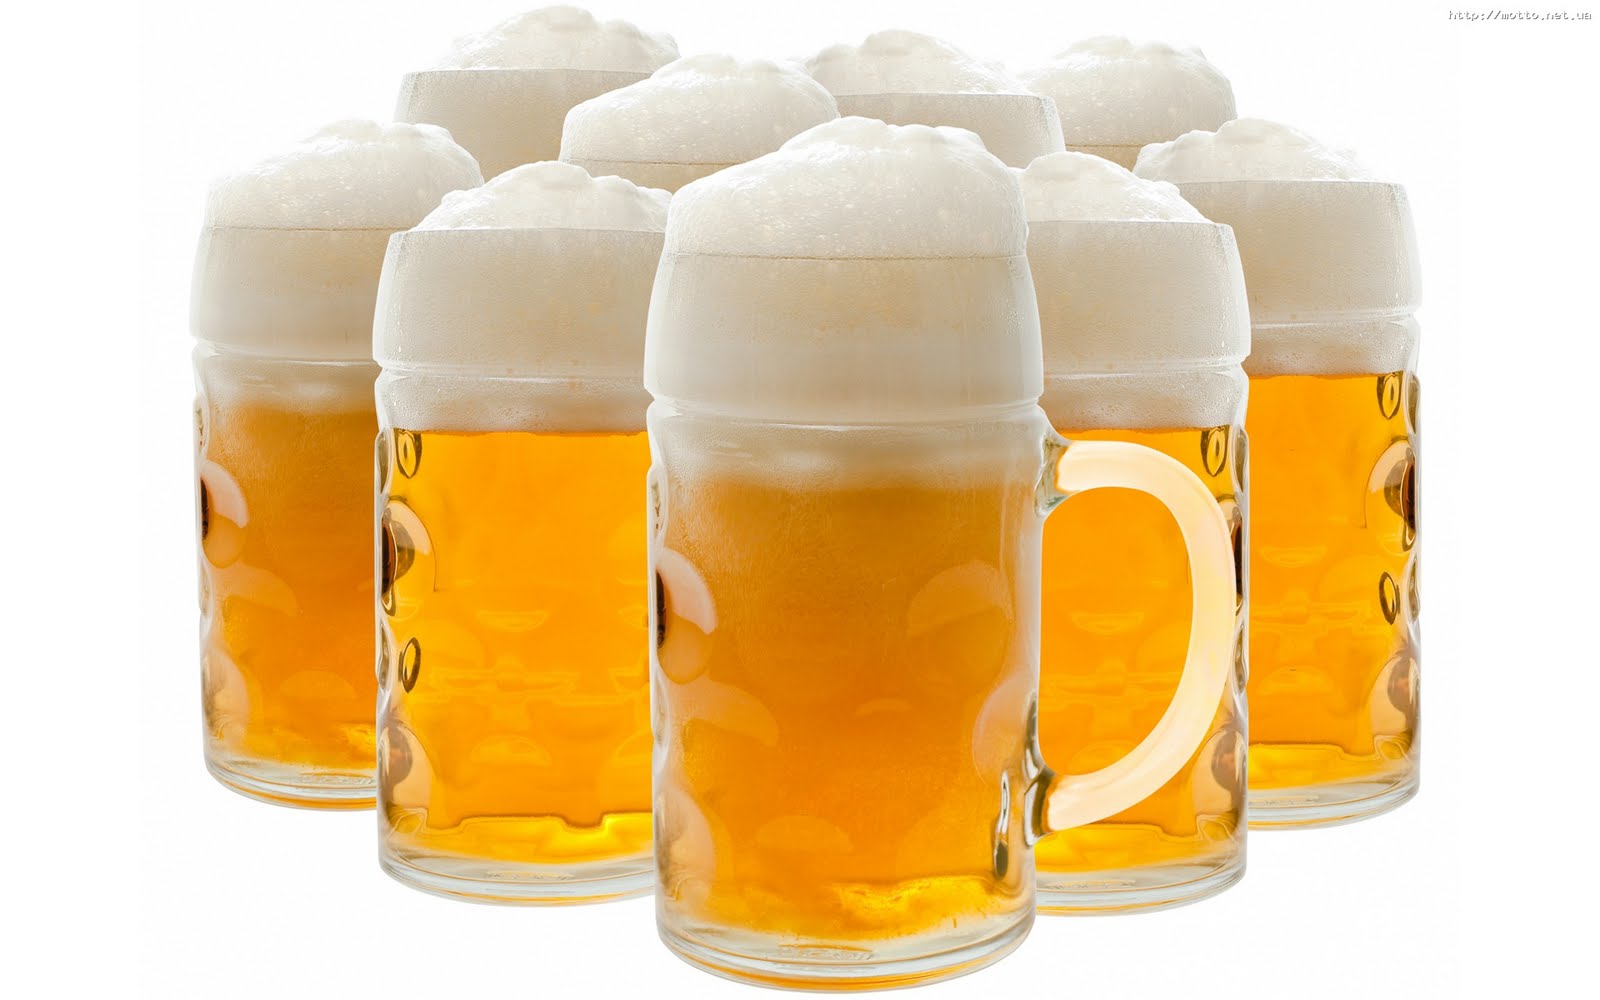 Tres beneficios de la cerveza ¡Salud!